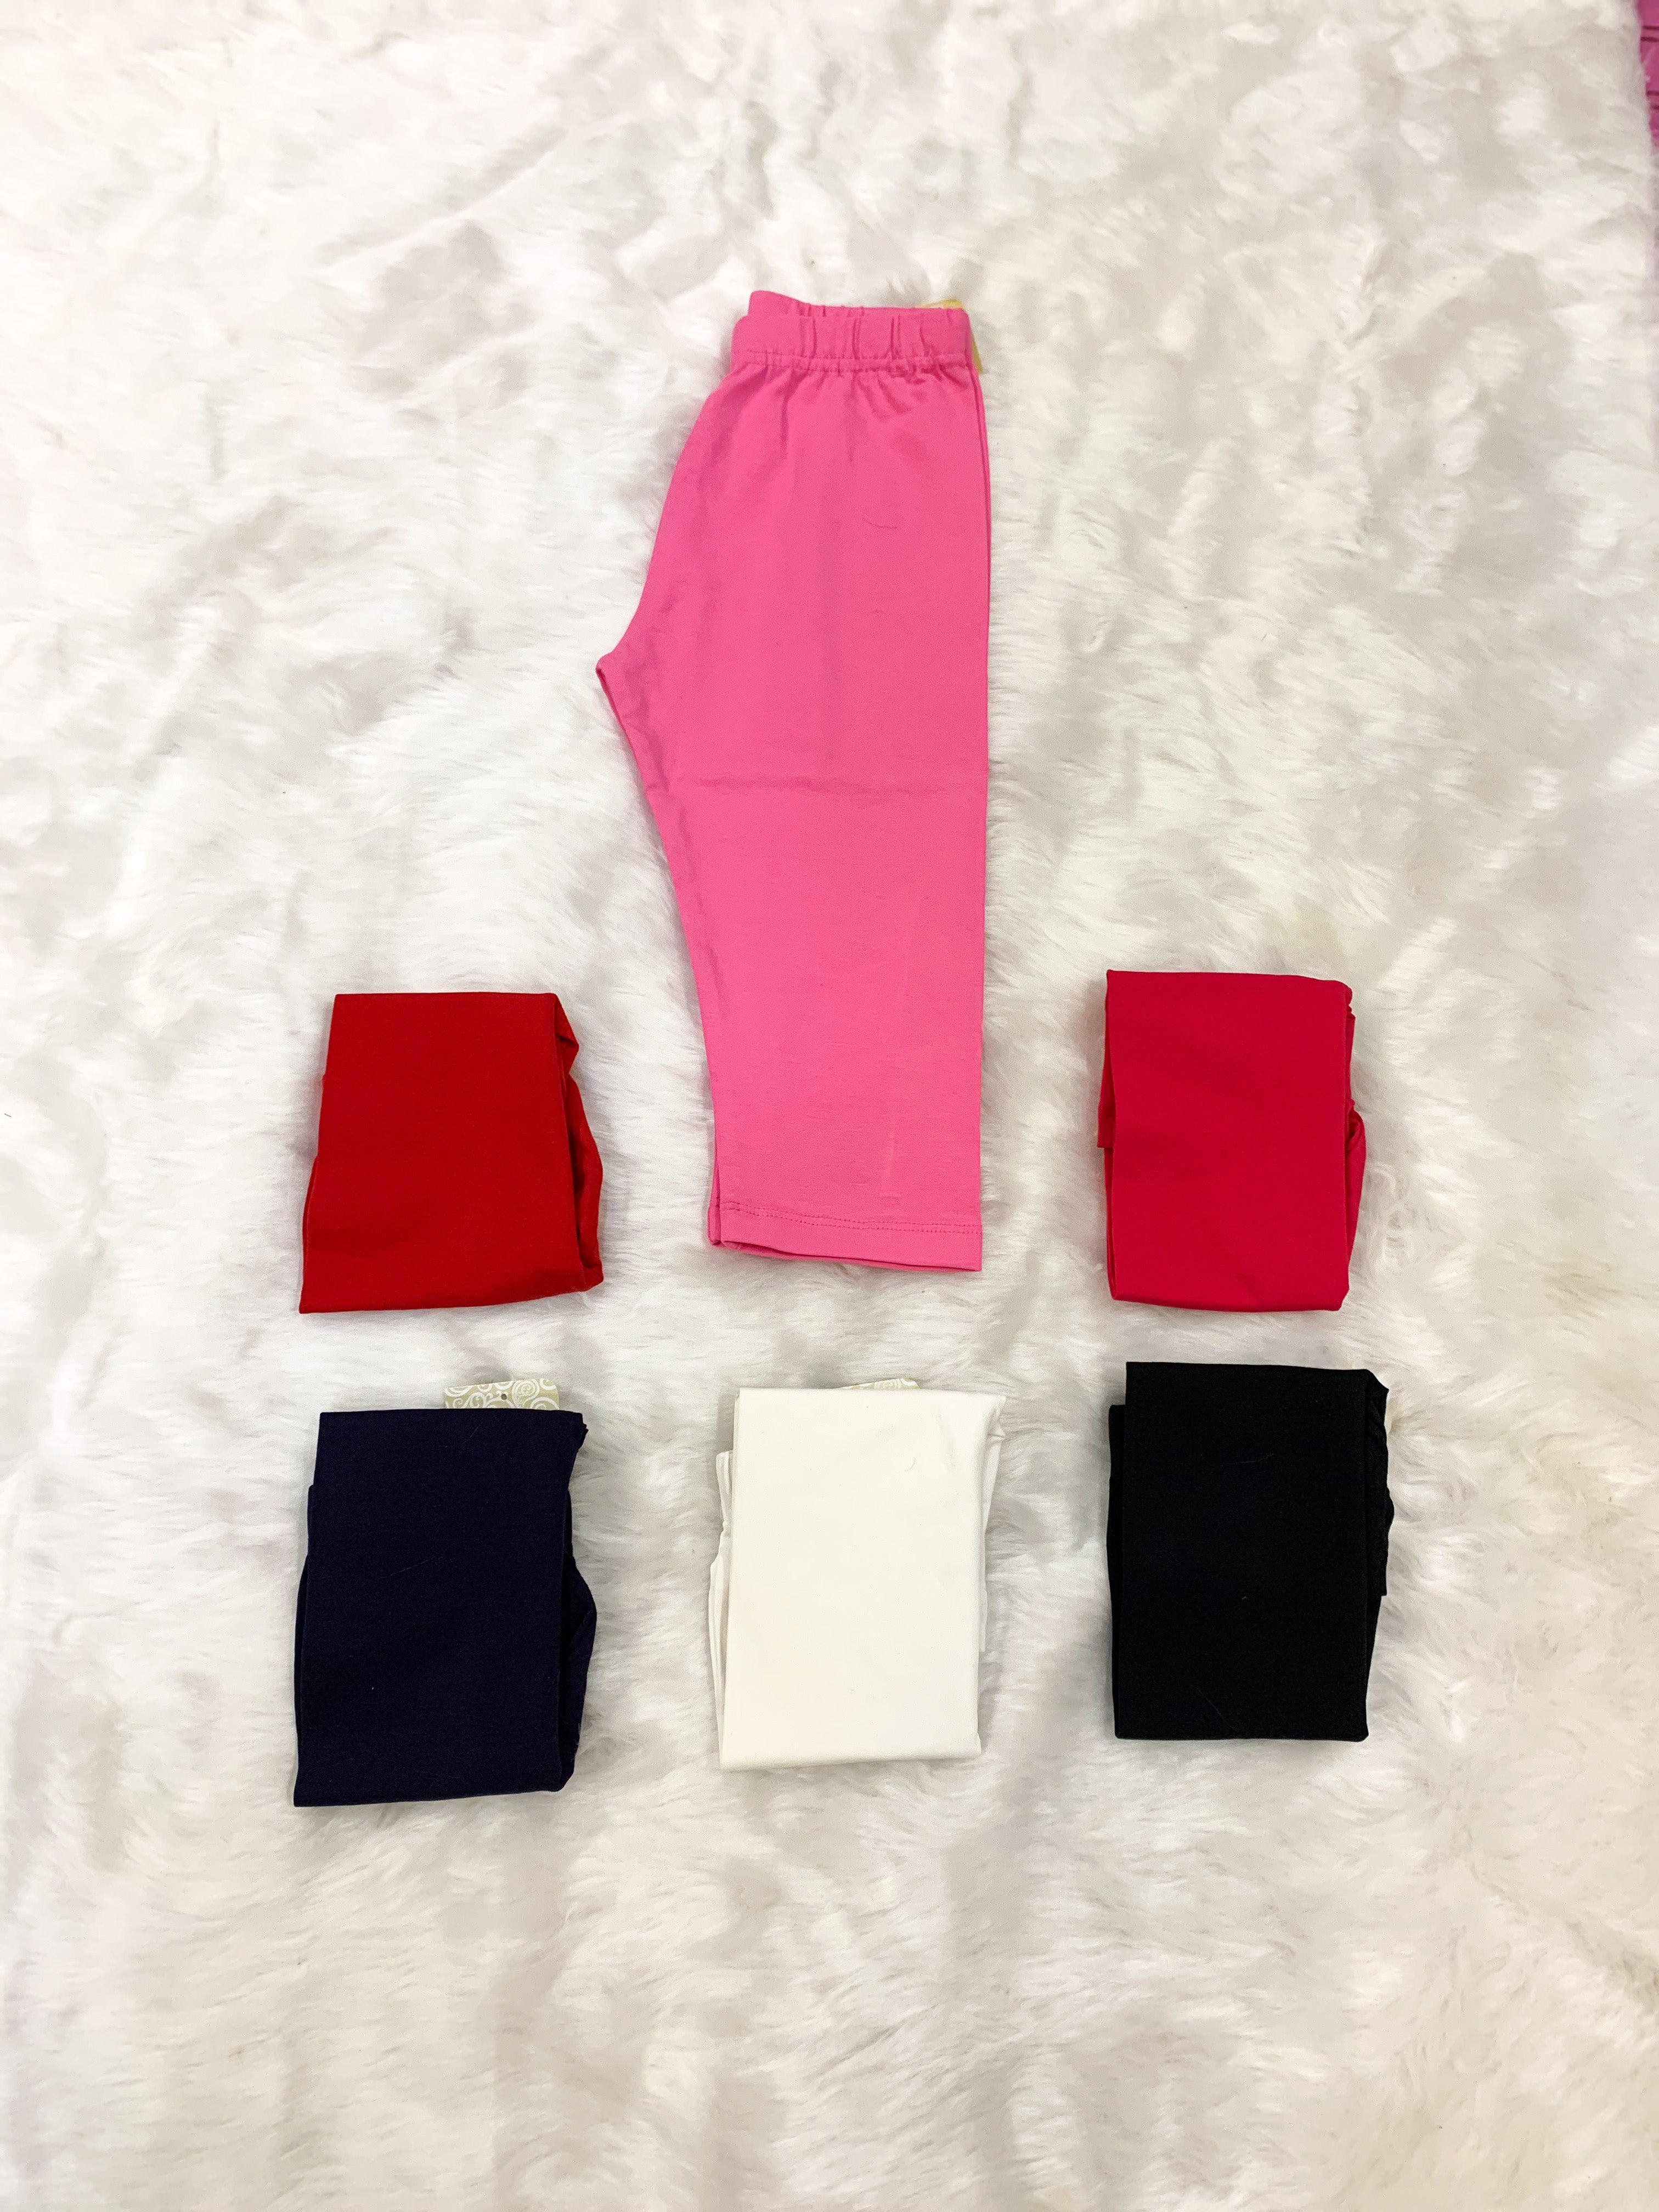 Red Size 4 Leggings for Girls | eBay